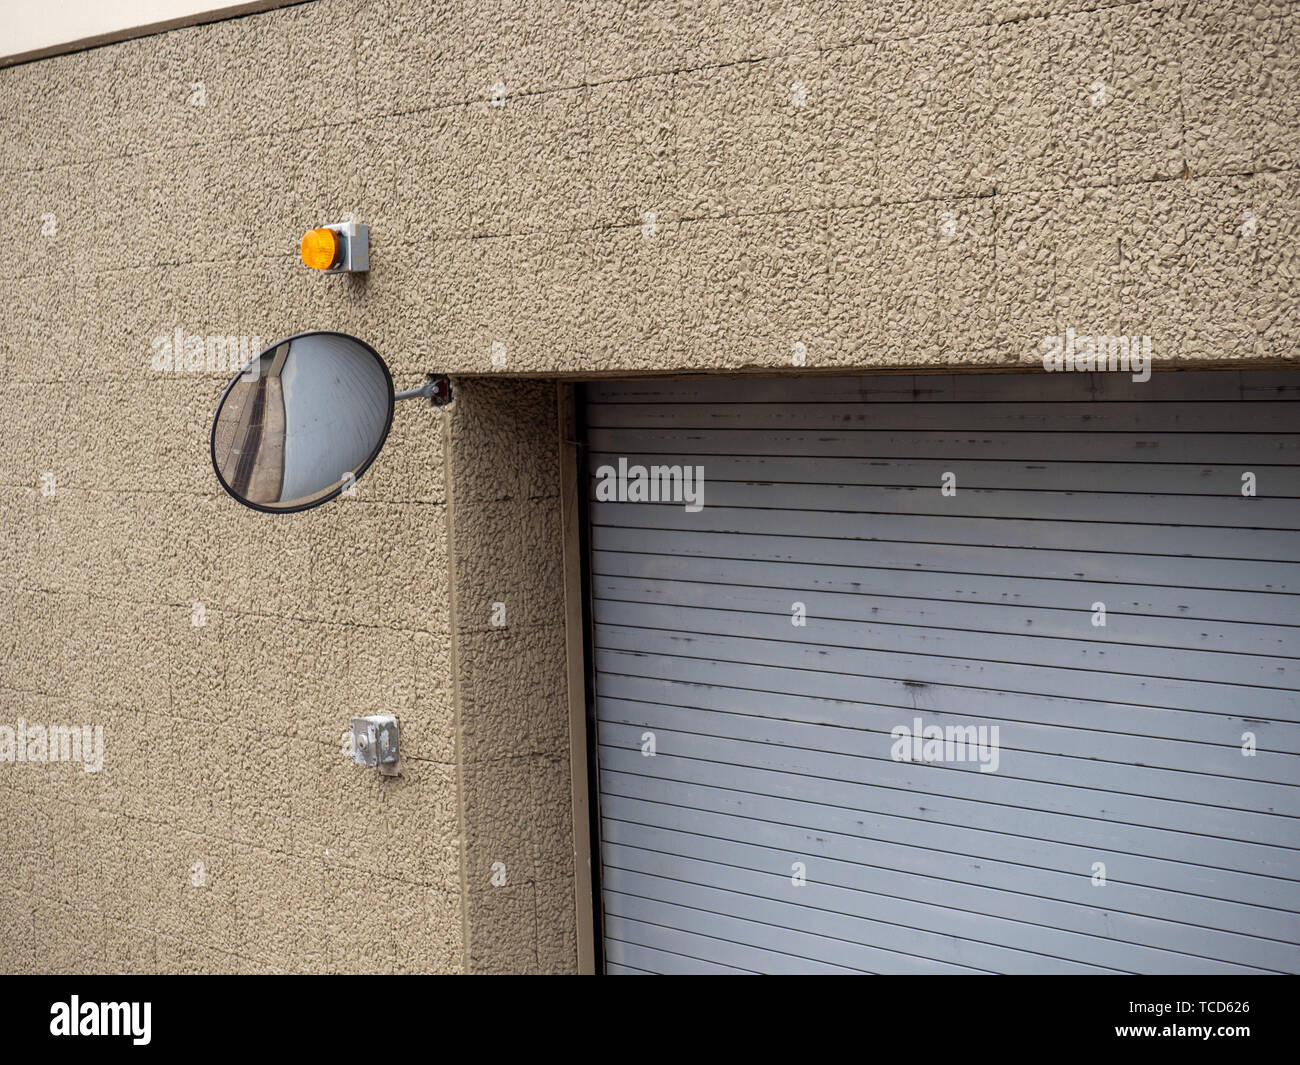 Sicherheit Spiegel auf der Ecke der Garage komplexe Gebäude Eingang  Stockfotografie - Alamy